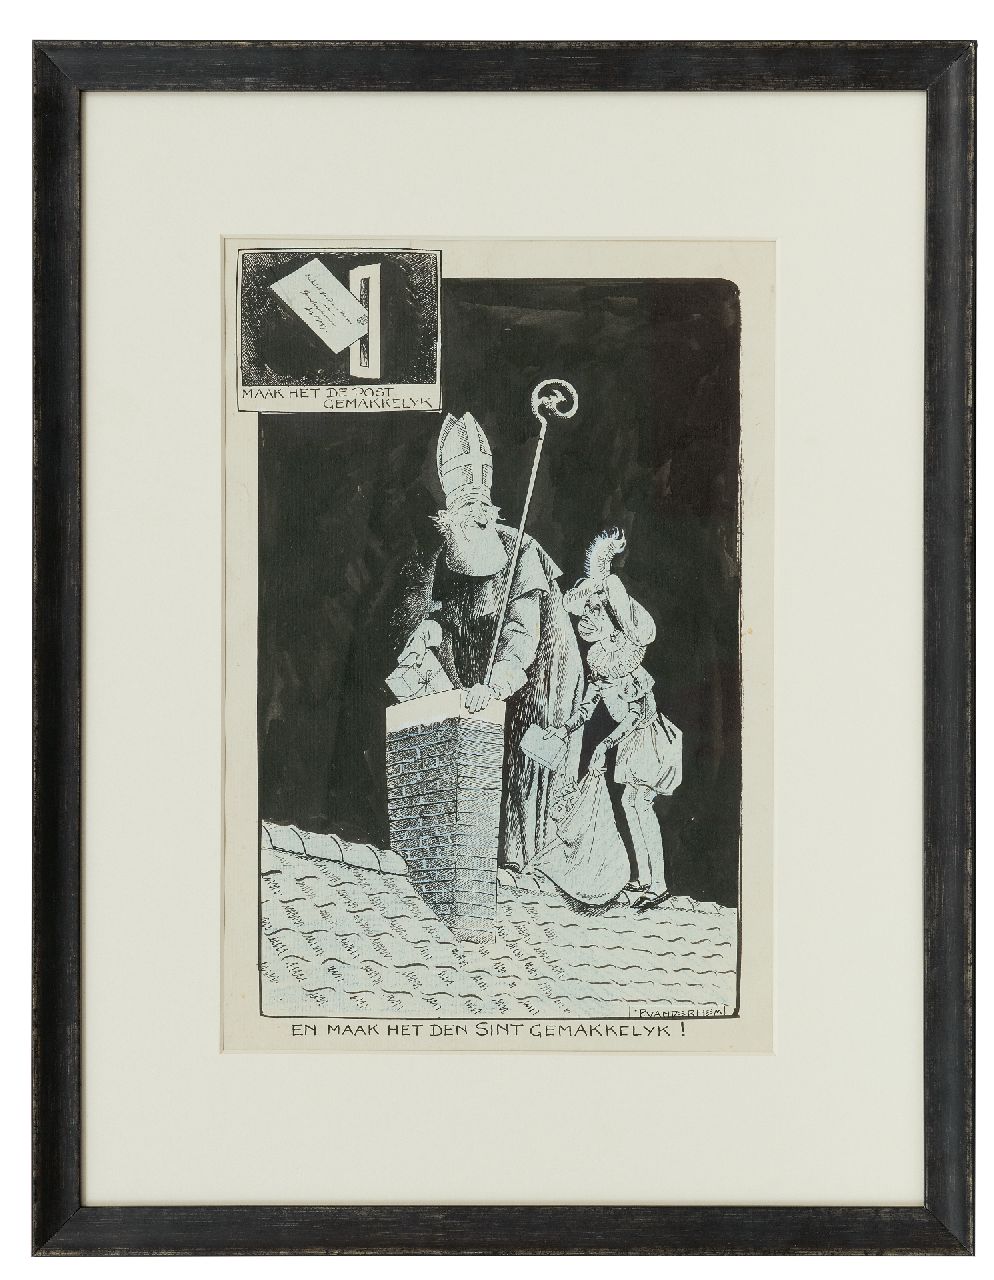 Hem P. van der | Pieter 'Piet' van der Hem | Aquarellen en tekeningen te koop aangeboden | Sint Nicolaasavond, Oost-Indische inkt en krijt op papier 38,5 x 24,8 cm, gesigneerd rechtsonder